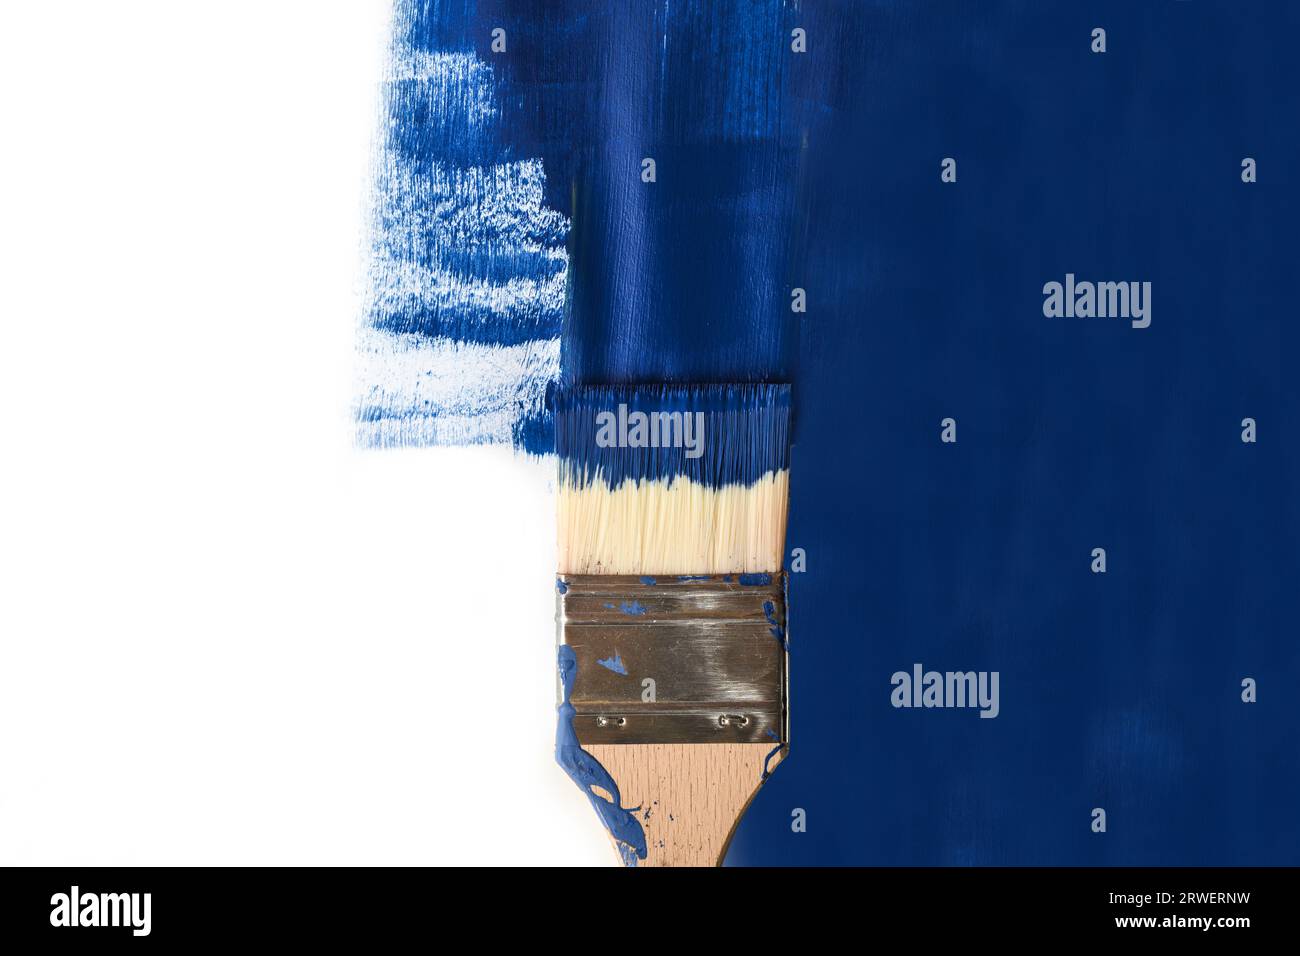 Pinceau peindre une moitié de surface blanche avec la couleur bleue, concept d'influence et de prise de contrôle en cas de points de vue opposés, espace de copie, pose à plat Banque D'Images